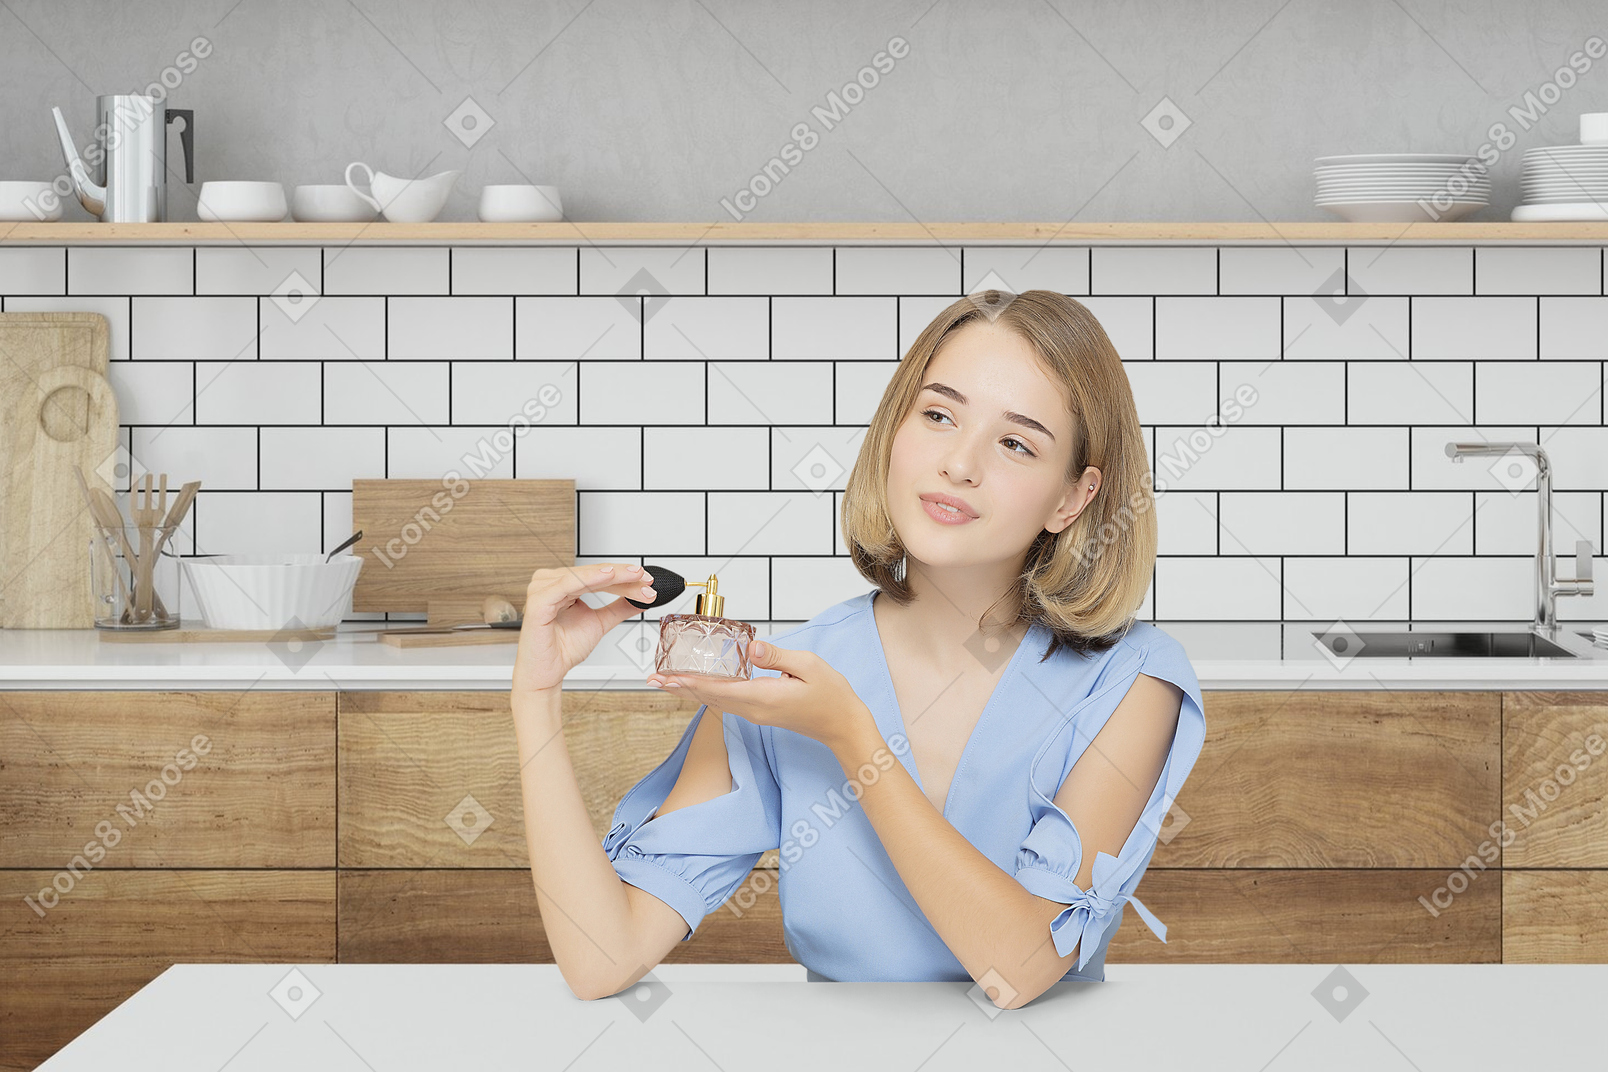 Mujer joven sentada en la cocina y sosteniendo una botella de perfume